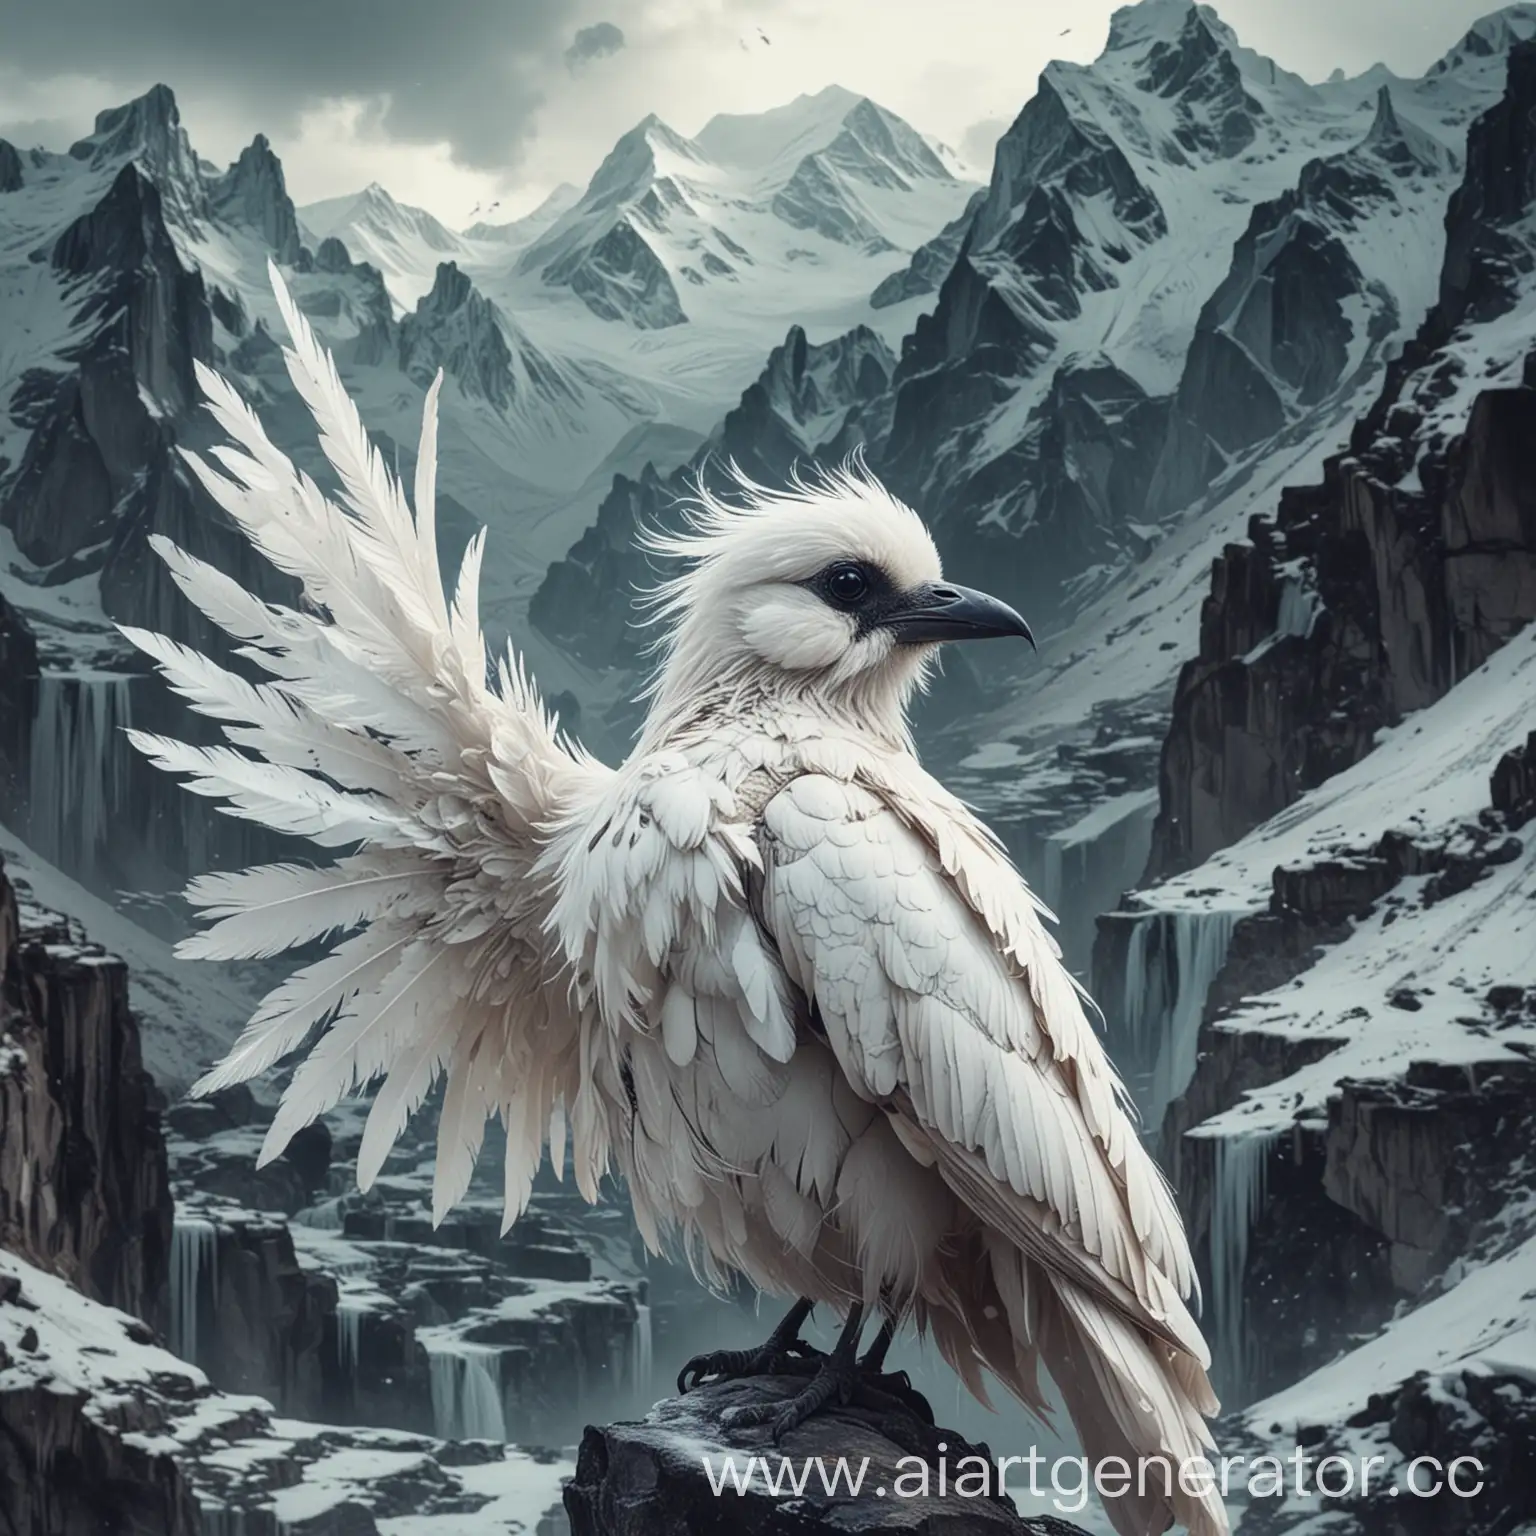 опиумная птица с белой длинной шерстью и темными глазами на фоне ледяных гор с глитч эффектом